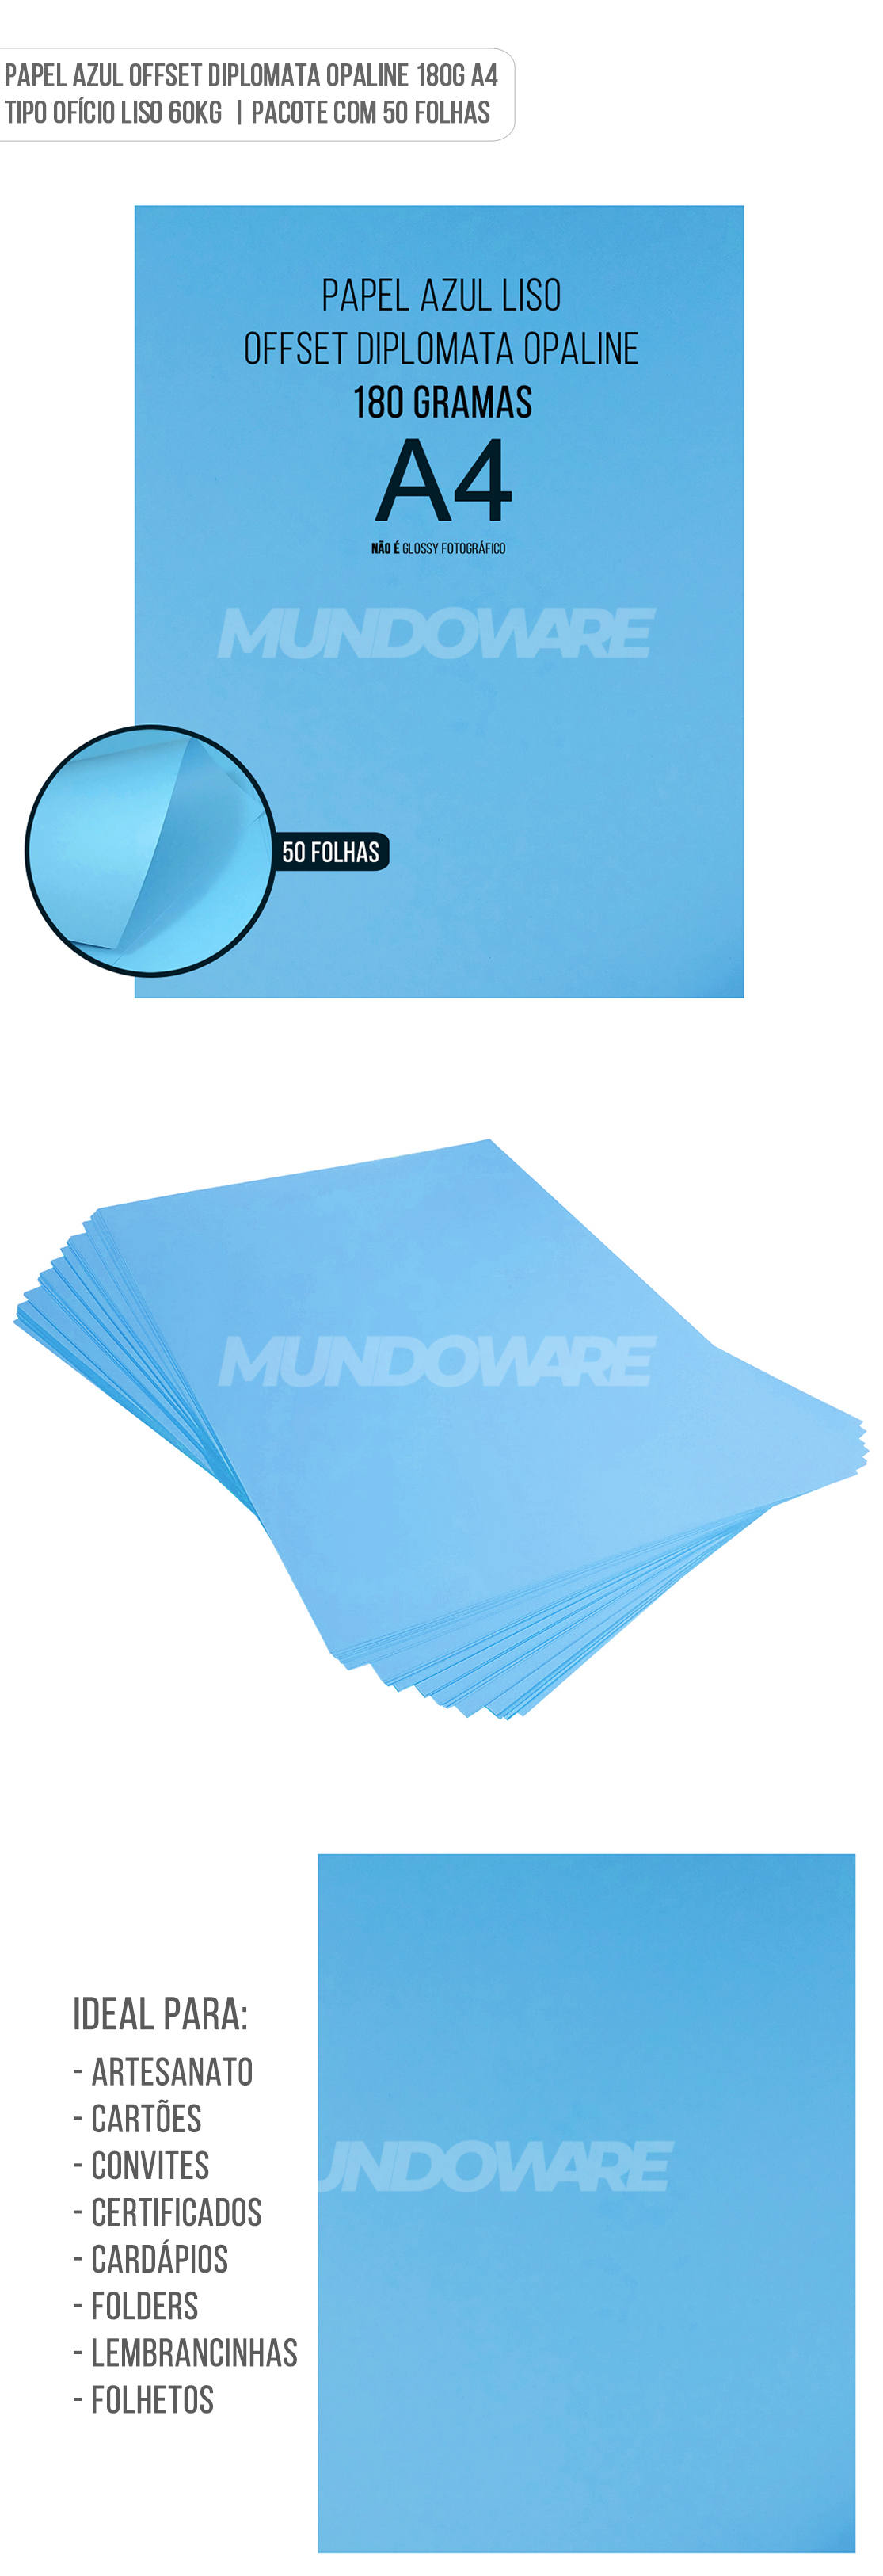 Papel Azul Offset Diplomata Opaline 180g A4 Tipo Ofício Liso 60kg Pacote com 50 folhas